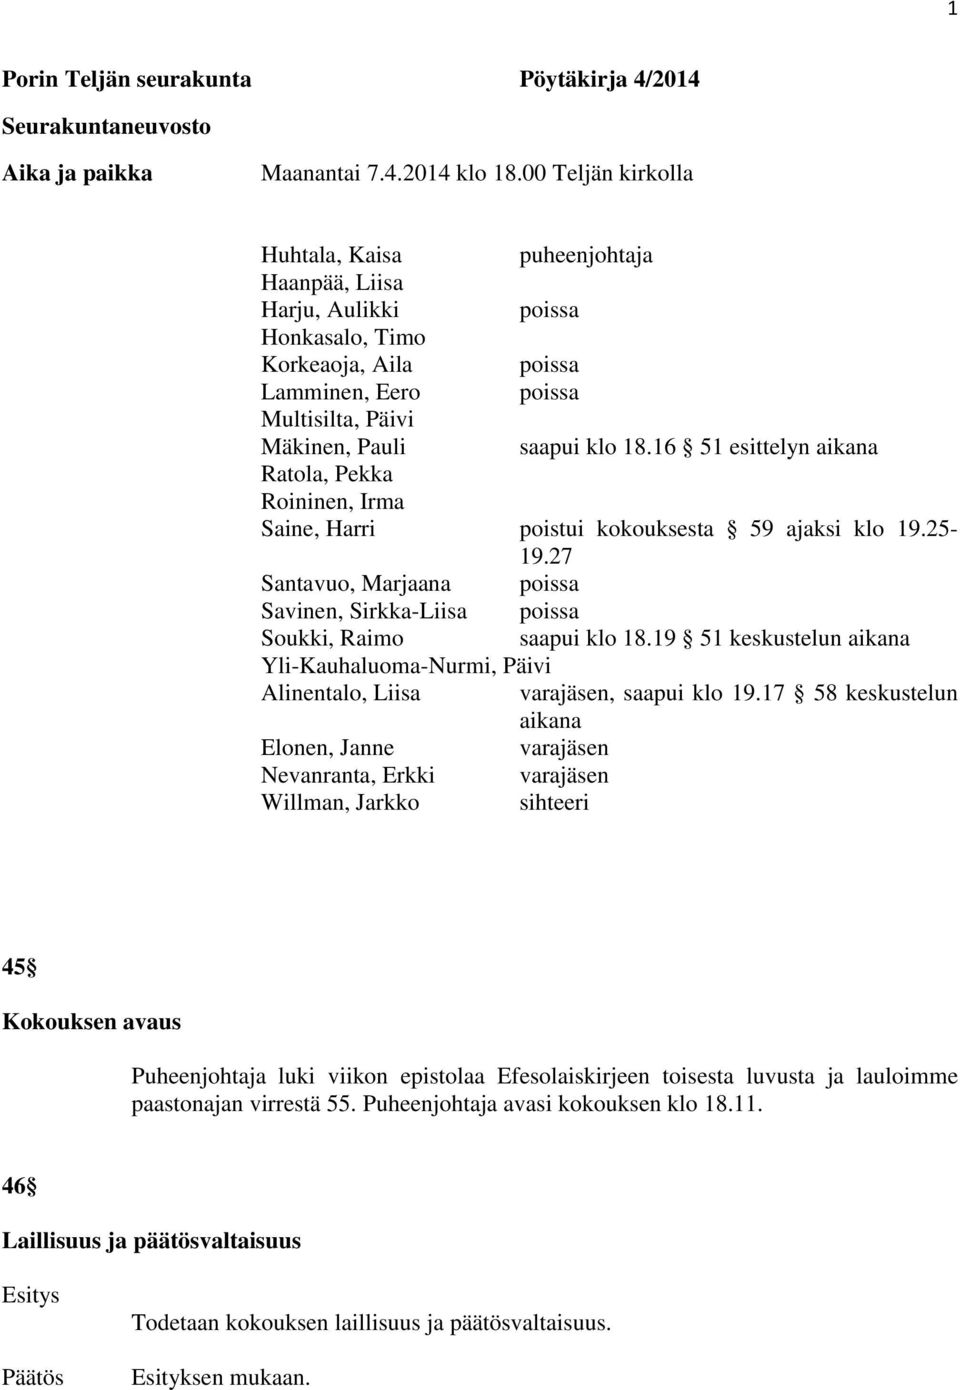 16 51 esittelyn aikana Ratola, Pekka Roininen, Irma Saine, Harri poistui kokouksesta 59 ajaksi klo 19.25-19.27 Santavuo, Marjaana poissa Savinen, Sirkka-Liisa poissa Soukki, Raimo saapui klo 18.